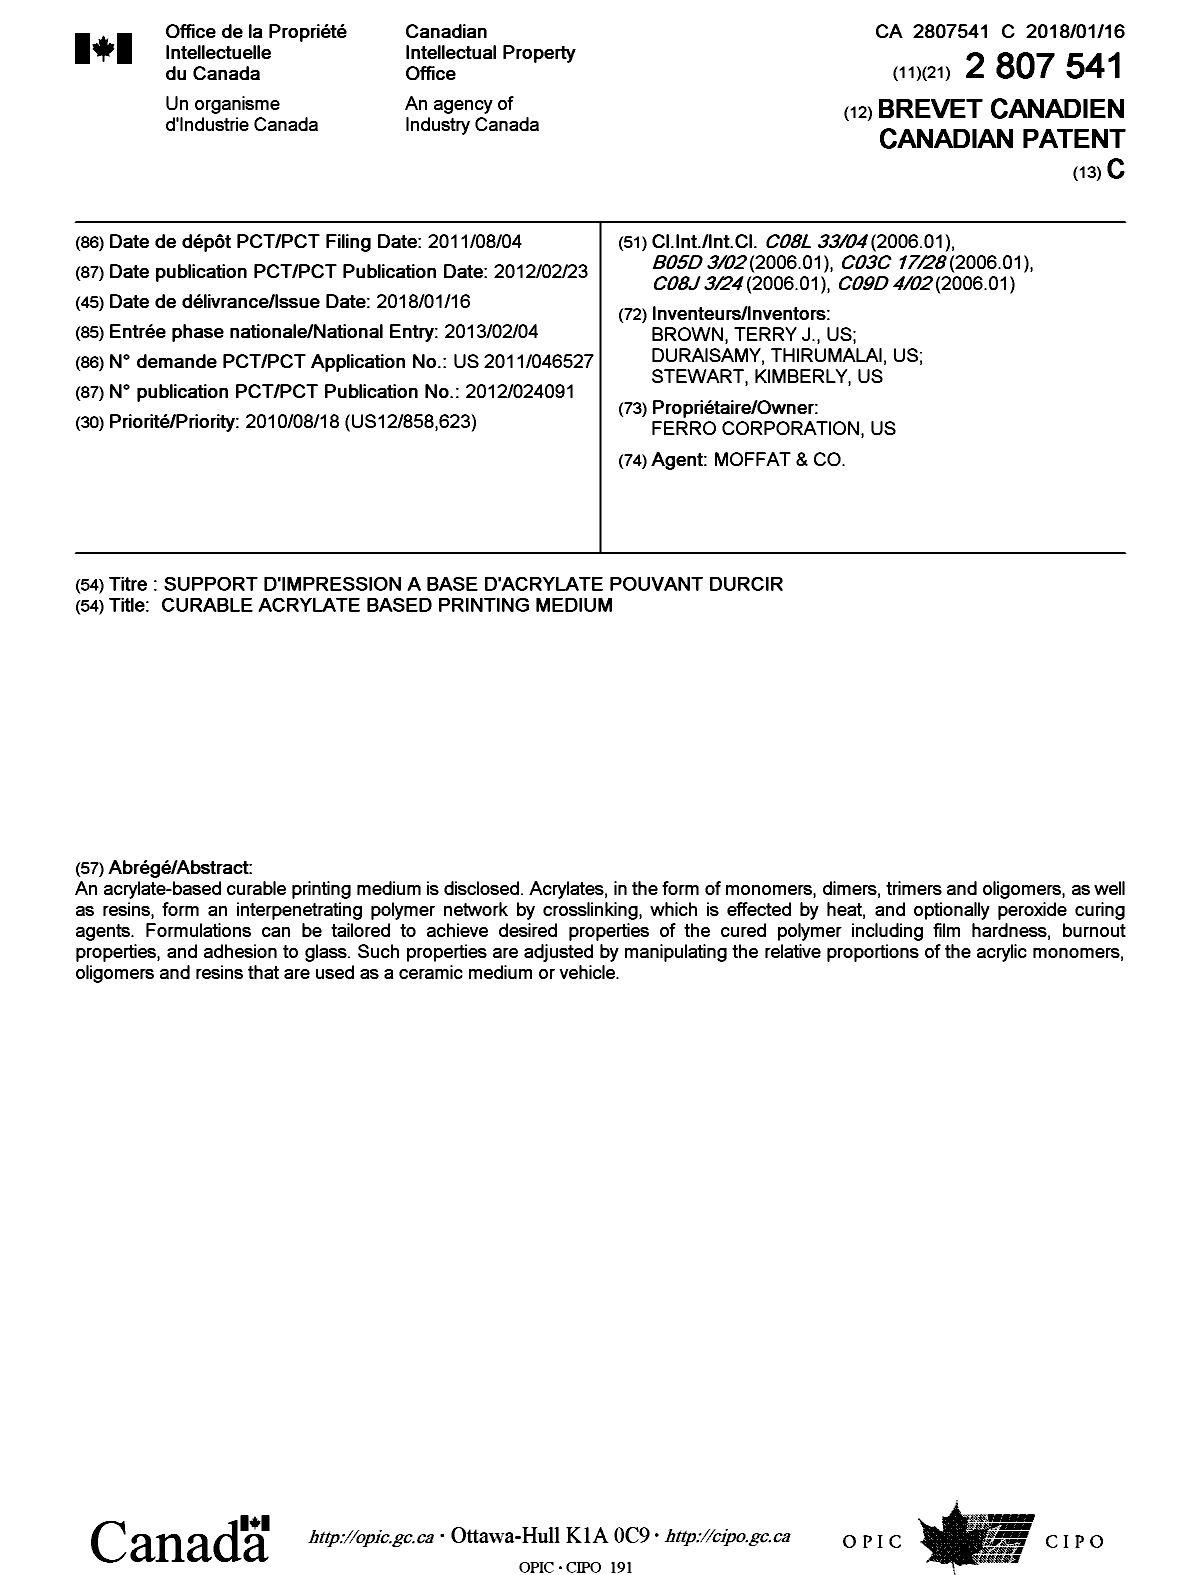 Document de brevet canadien 2807541. Page couverture 20171229. Image 1 de 1